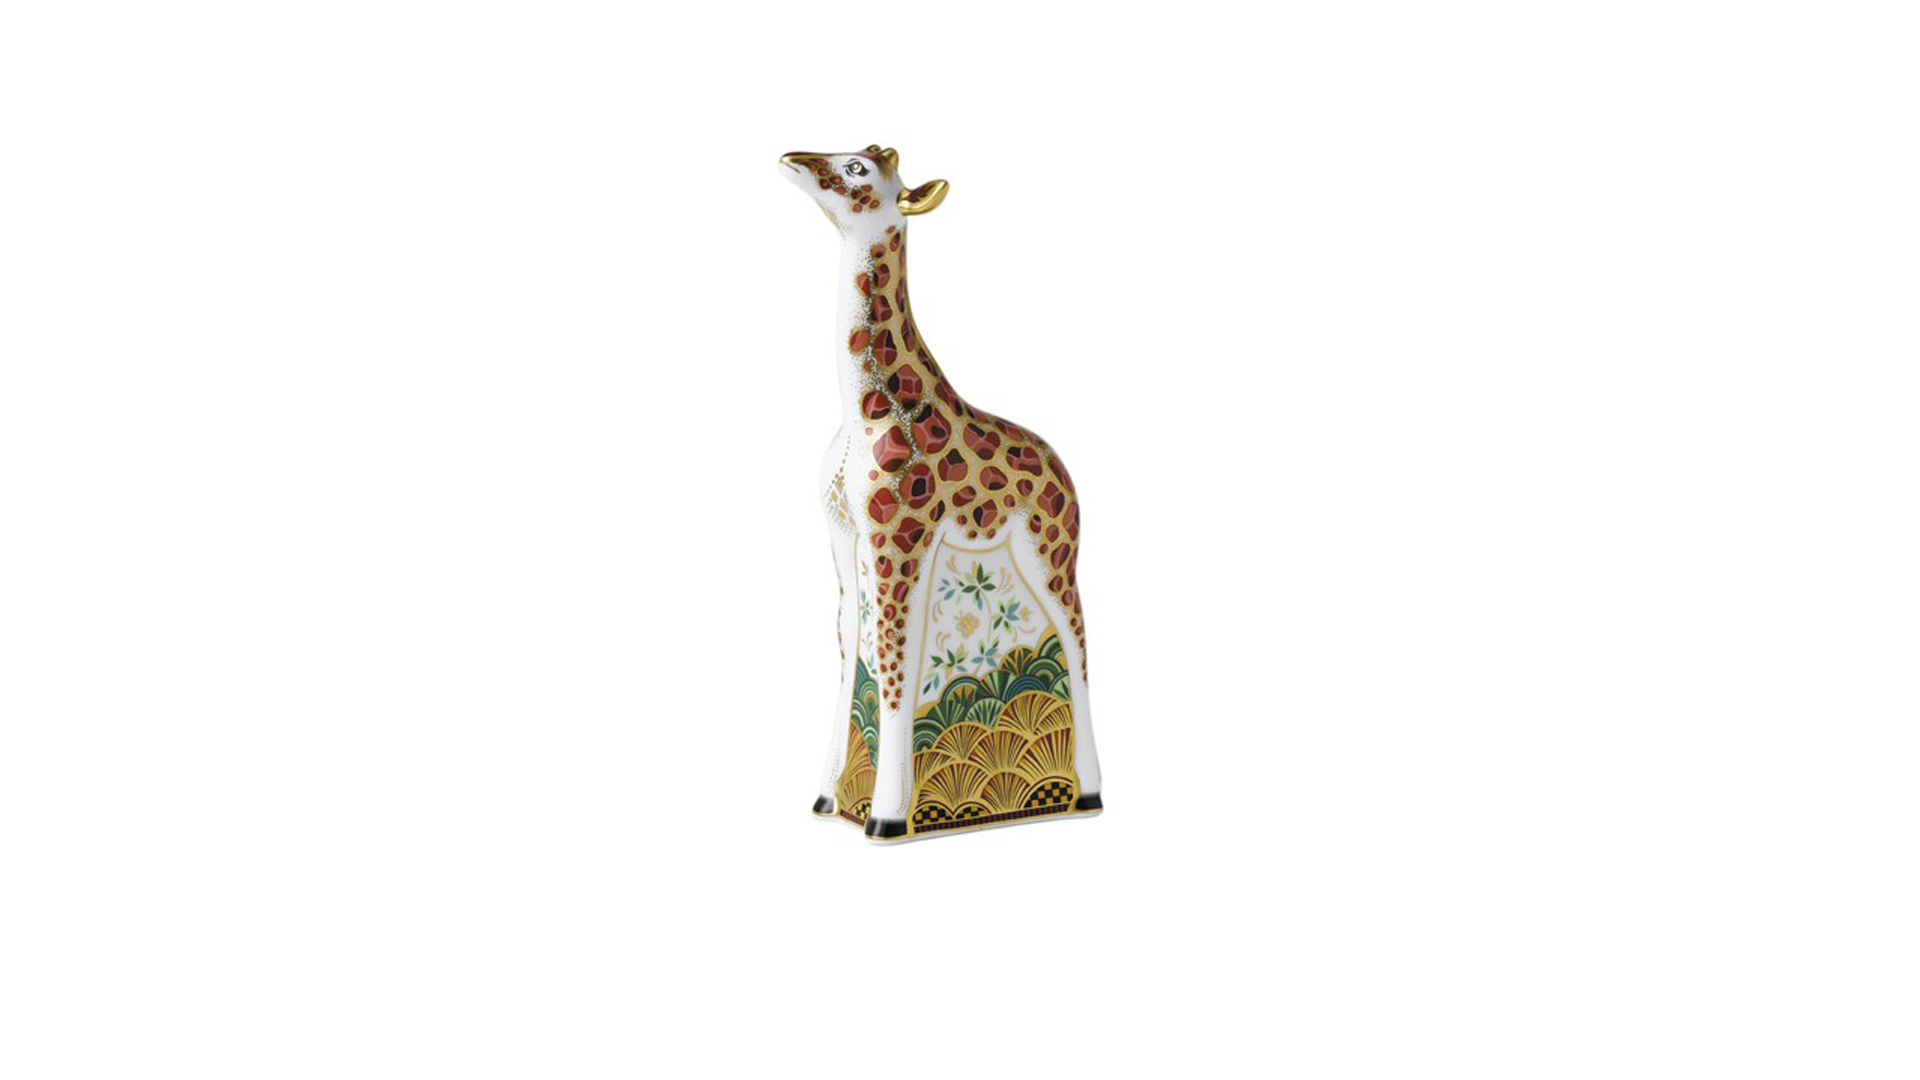 Пресс-папье Royal Crown Derby Детеныш жирафа 19,5 см